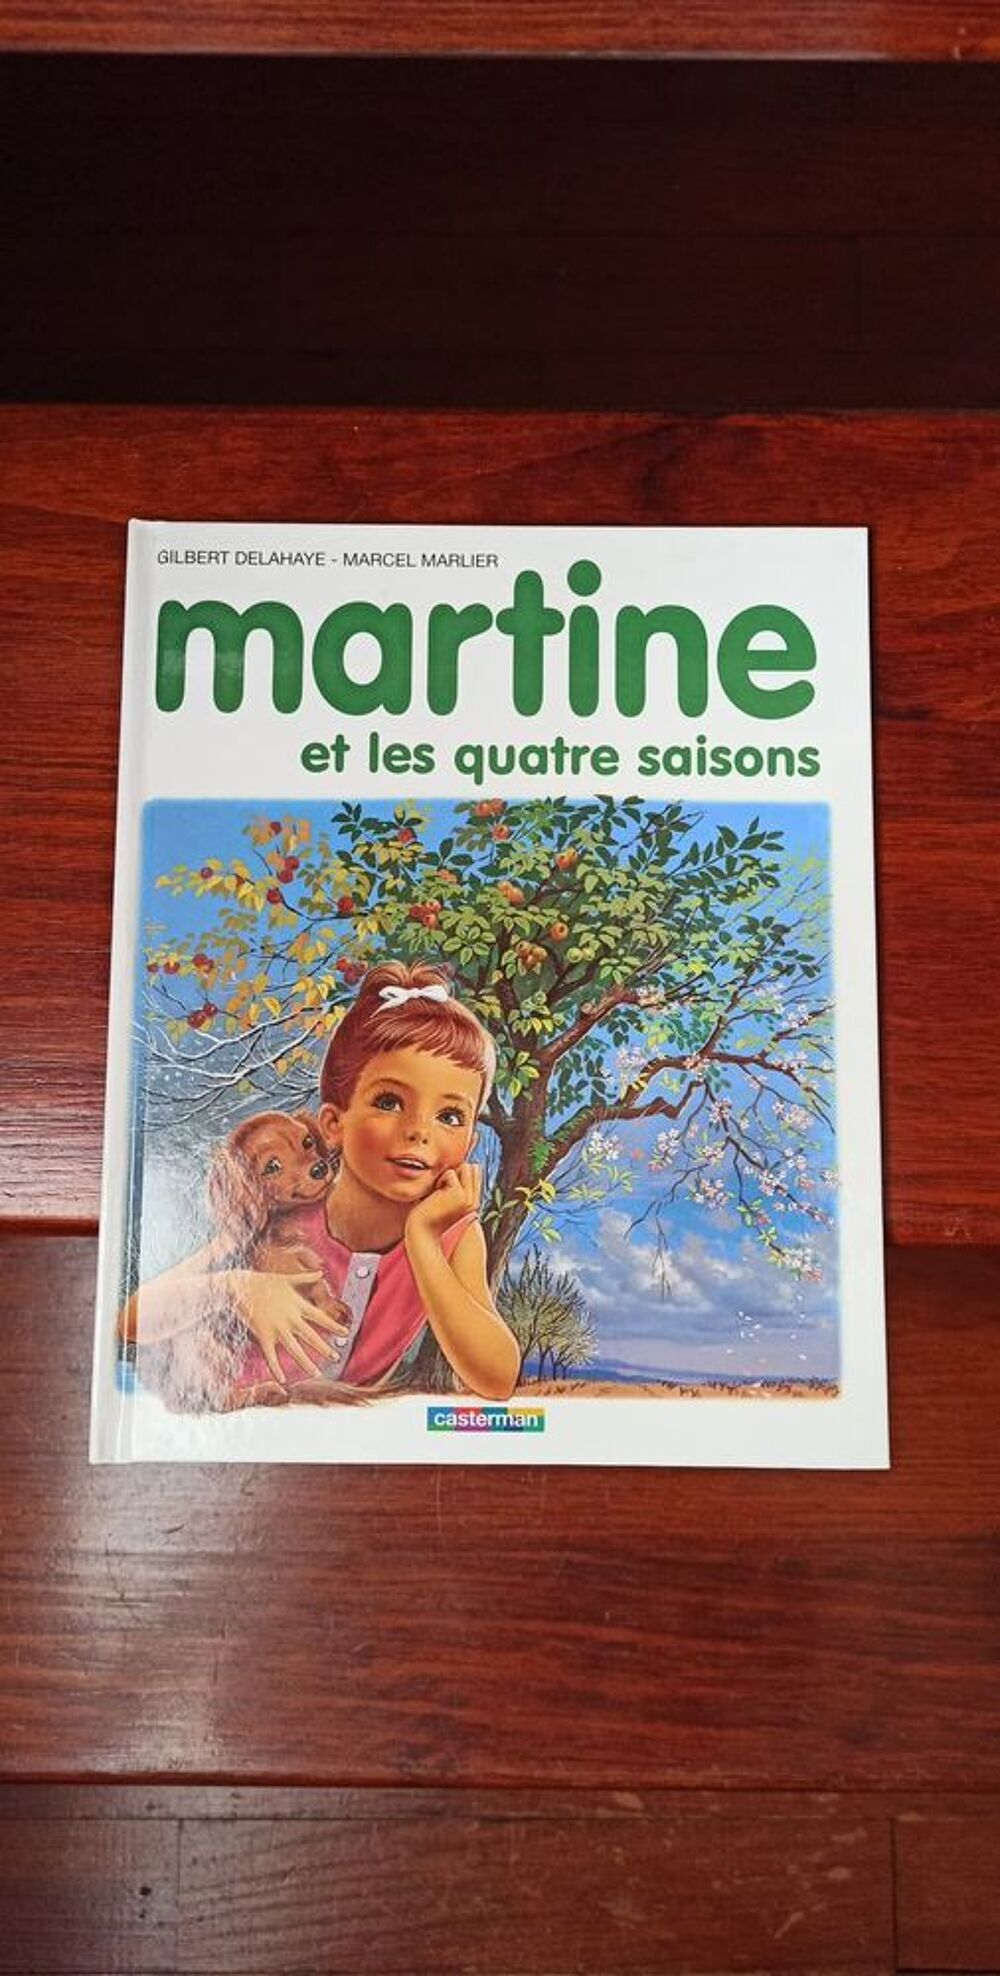 Martine et le monde des animaux + et les quatre saisons Livres et BD